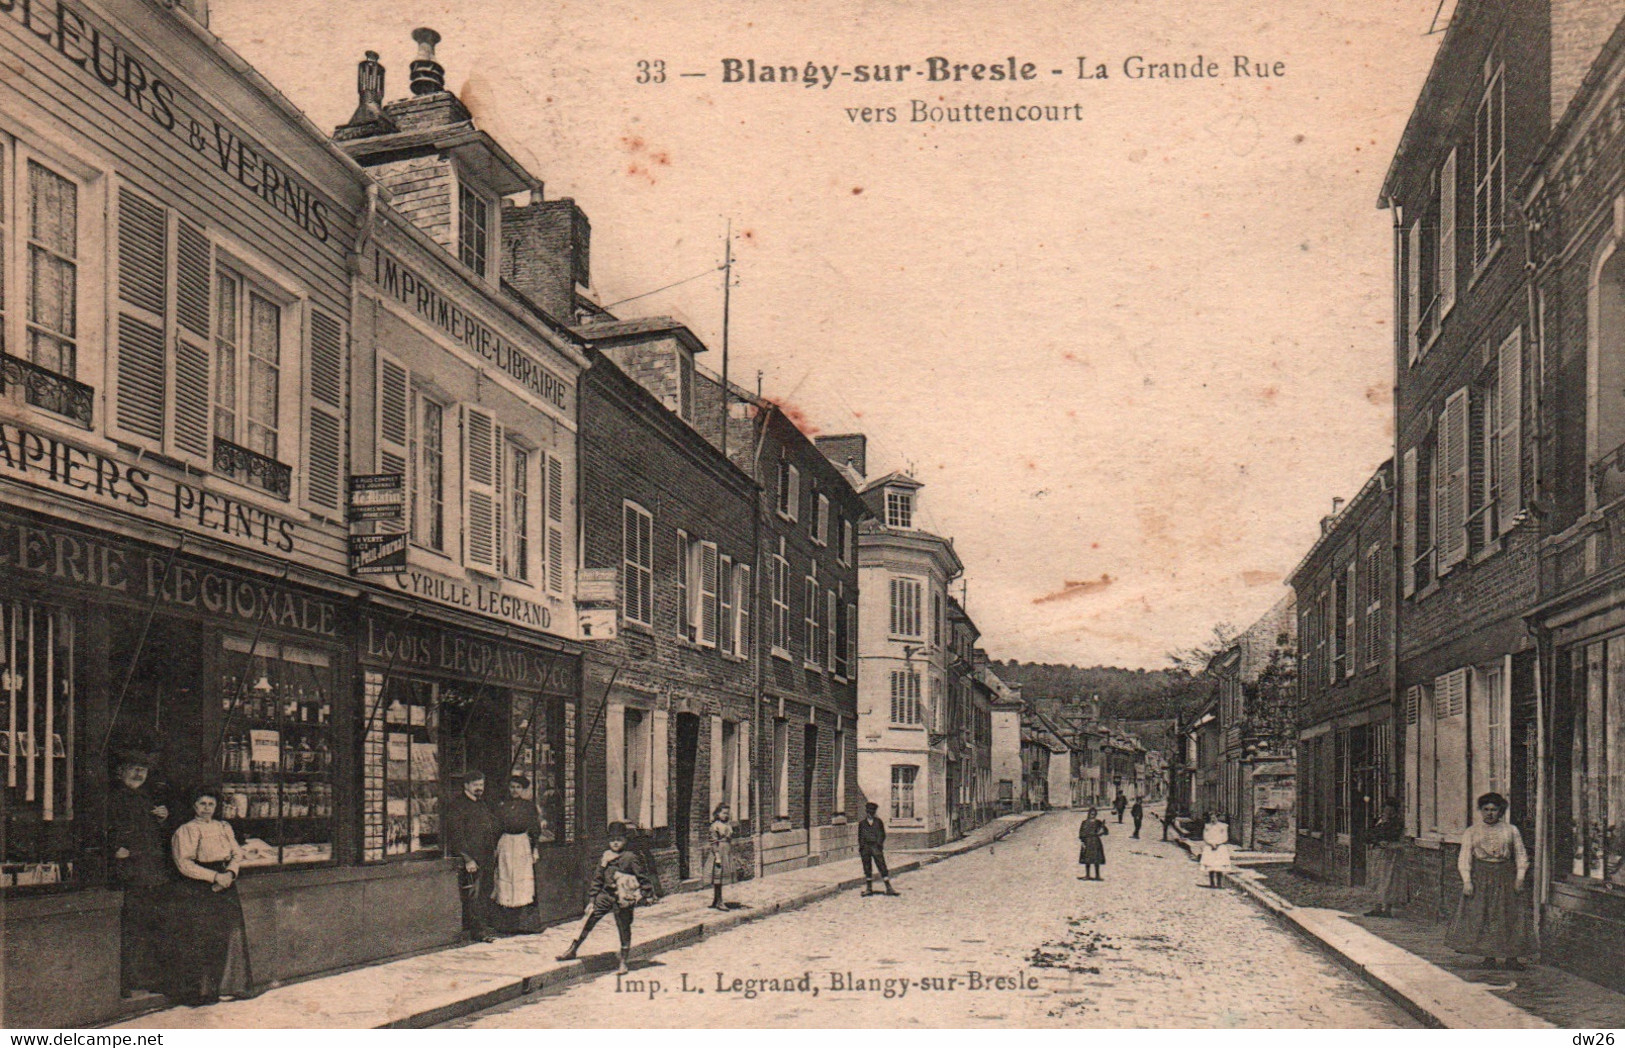 Blangy-sur-Bresle (Seine-Inférieure) La Grande Rue Vers Bouttencourt, Commerces - Edition Legrand - Carte Non Circulée - Blangy-sur-Bresle